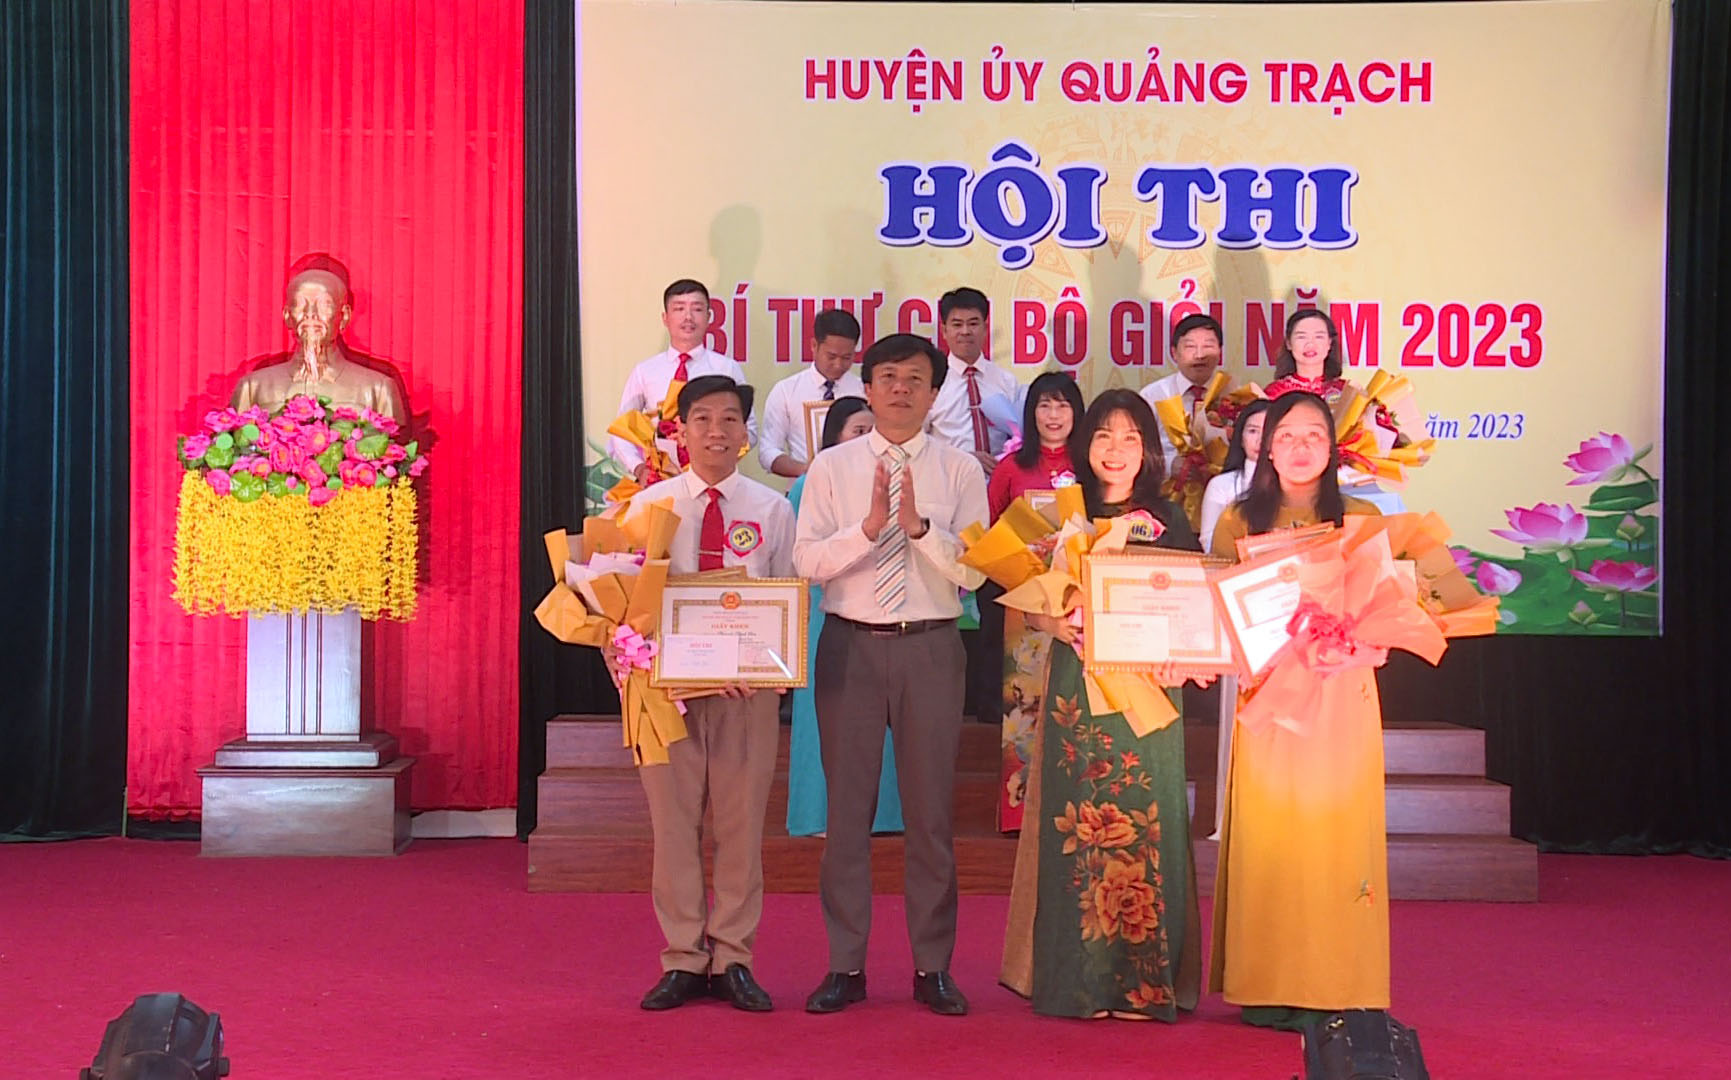 đồng chí Trần Minh Hường, Trưởng Ban tổ chức Huyện uỷ trao giải cho các thí sinh đạt giả ba